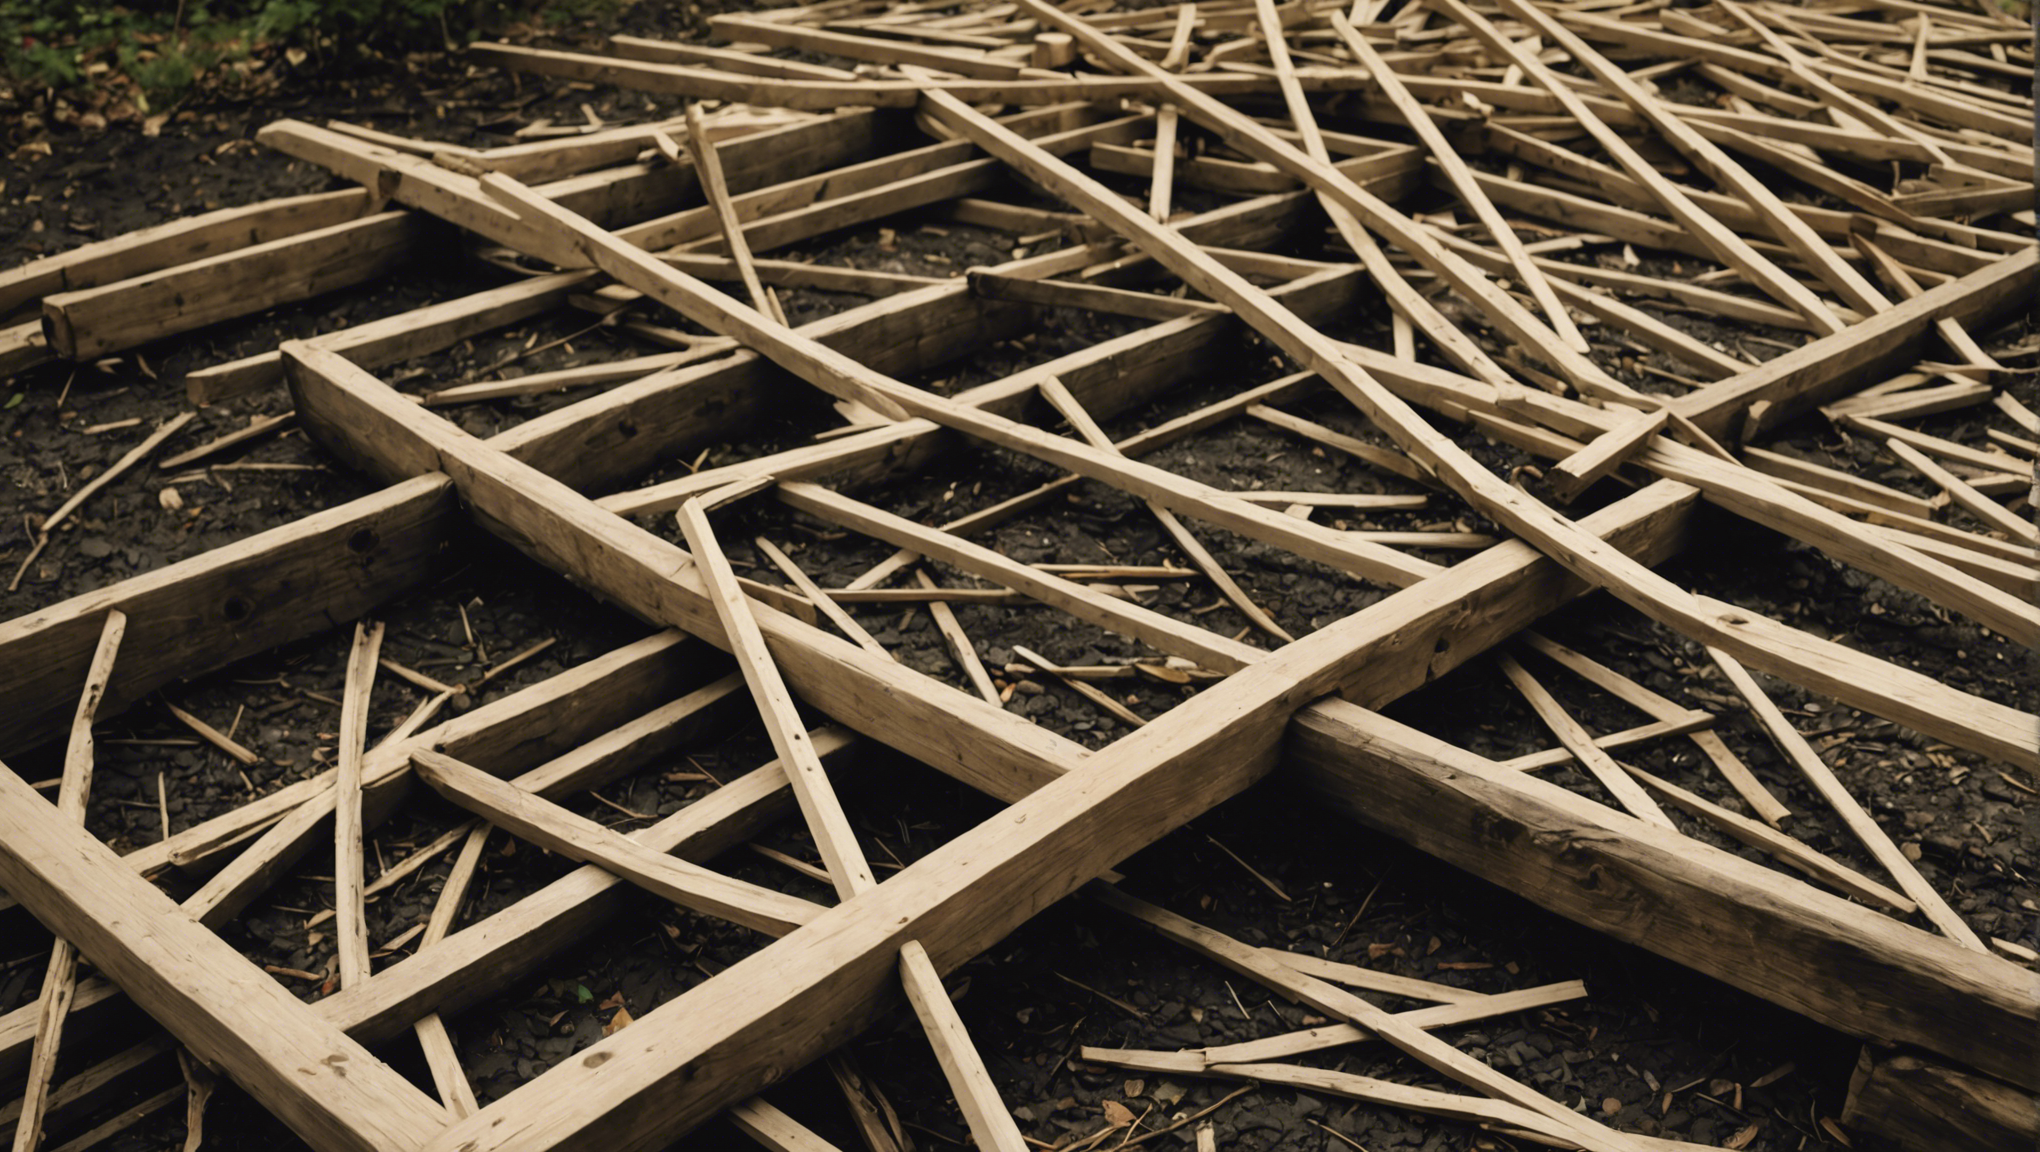 découvrez les avantages de choisir un devis pour une charpente traditionnelle et bénéficiez d'une structure solide et durable pour votre construction.